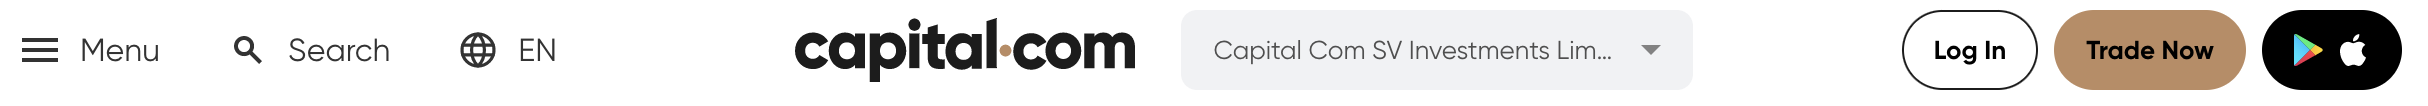 في Capital.com ، يمكنك فتح حساب بالنقر فوق "تداول الآن" في الجزء العلوي من الموقع.